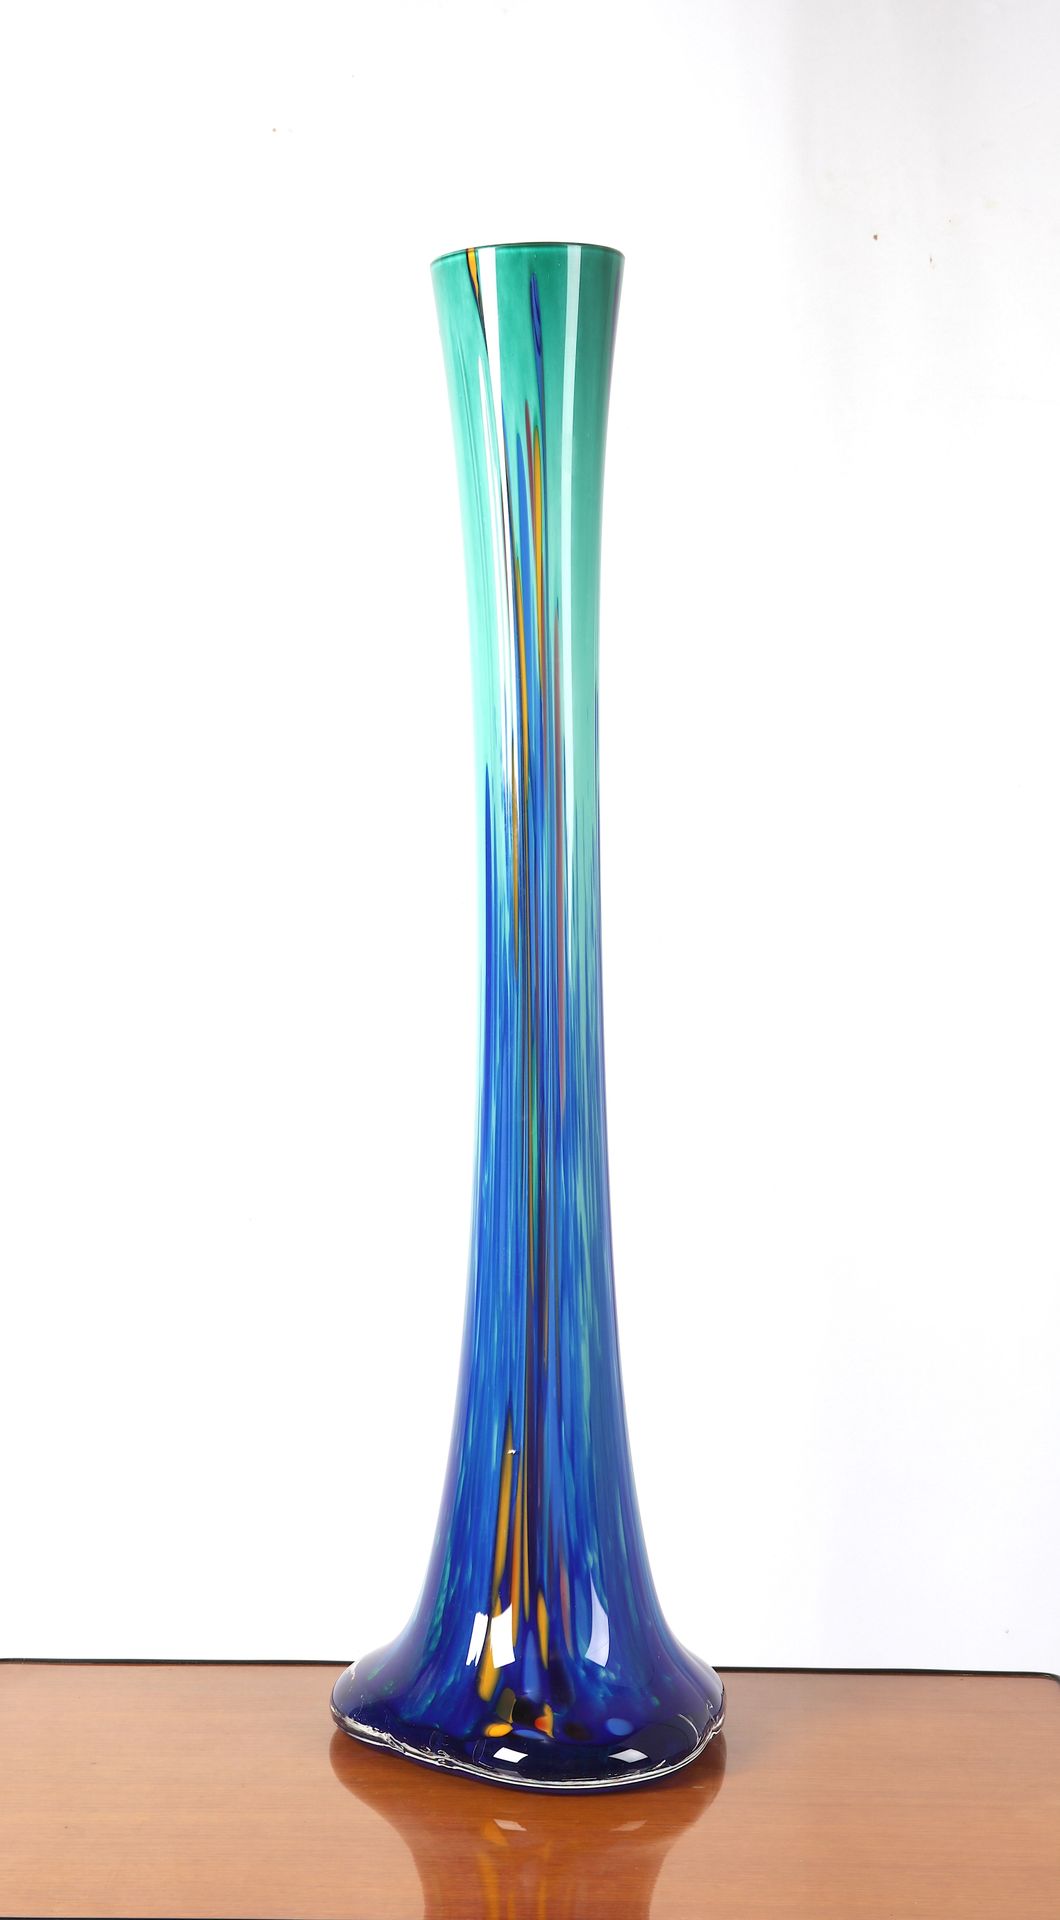 Null 
Verrerie d'Art de Soisy-sur-École, gran jarrón soliflor en vidrio azul-ver&hellip;